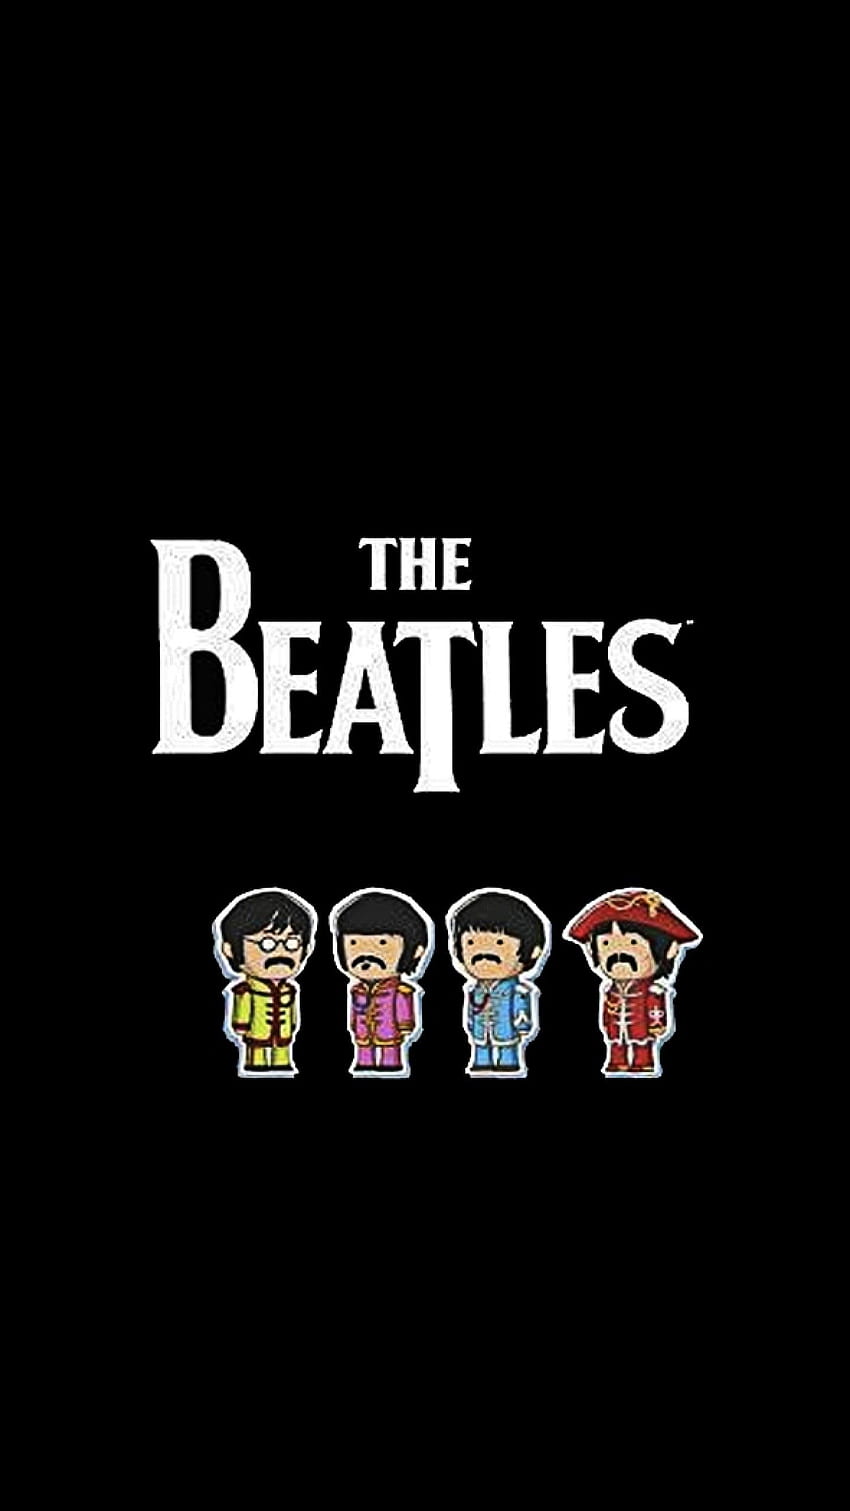 Visualize The Beatles, Nome, Membros, - Beatles iPhone Papel de parede de celular HD